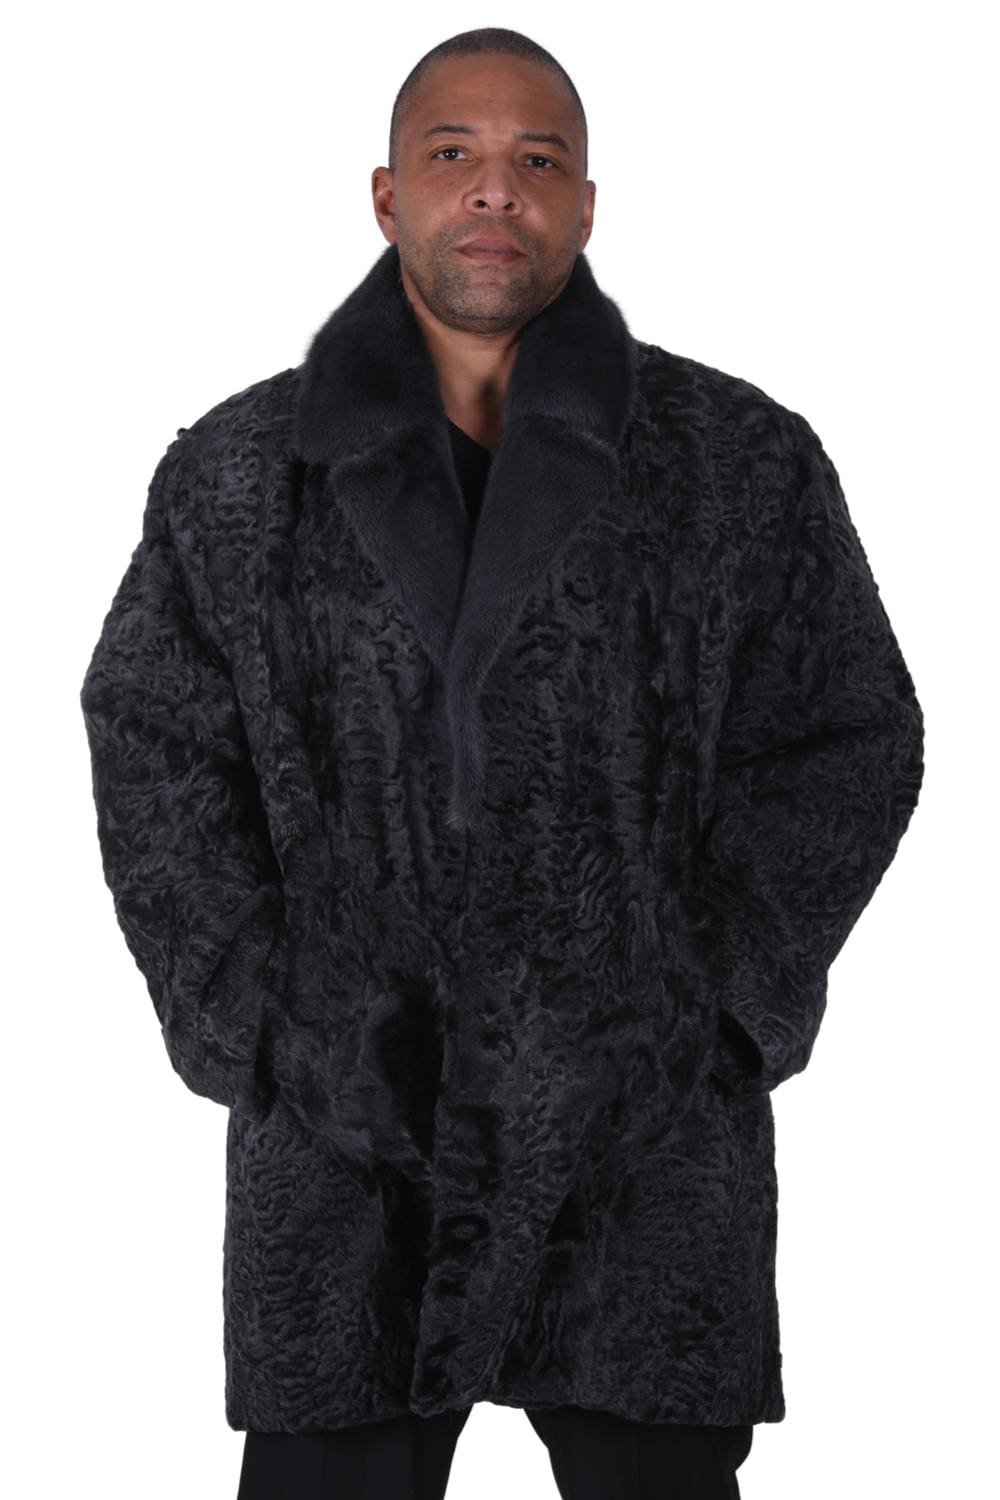 M4 2 Man's Persian Lamb Fur Carcoat Ugent Furs